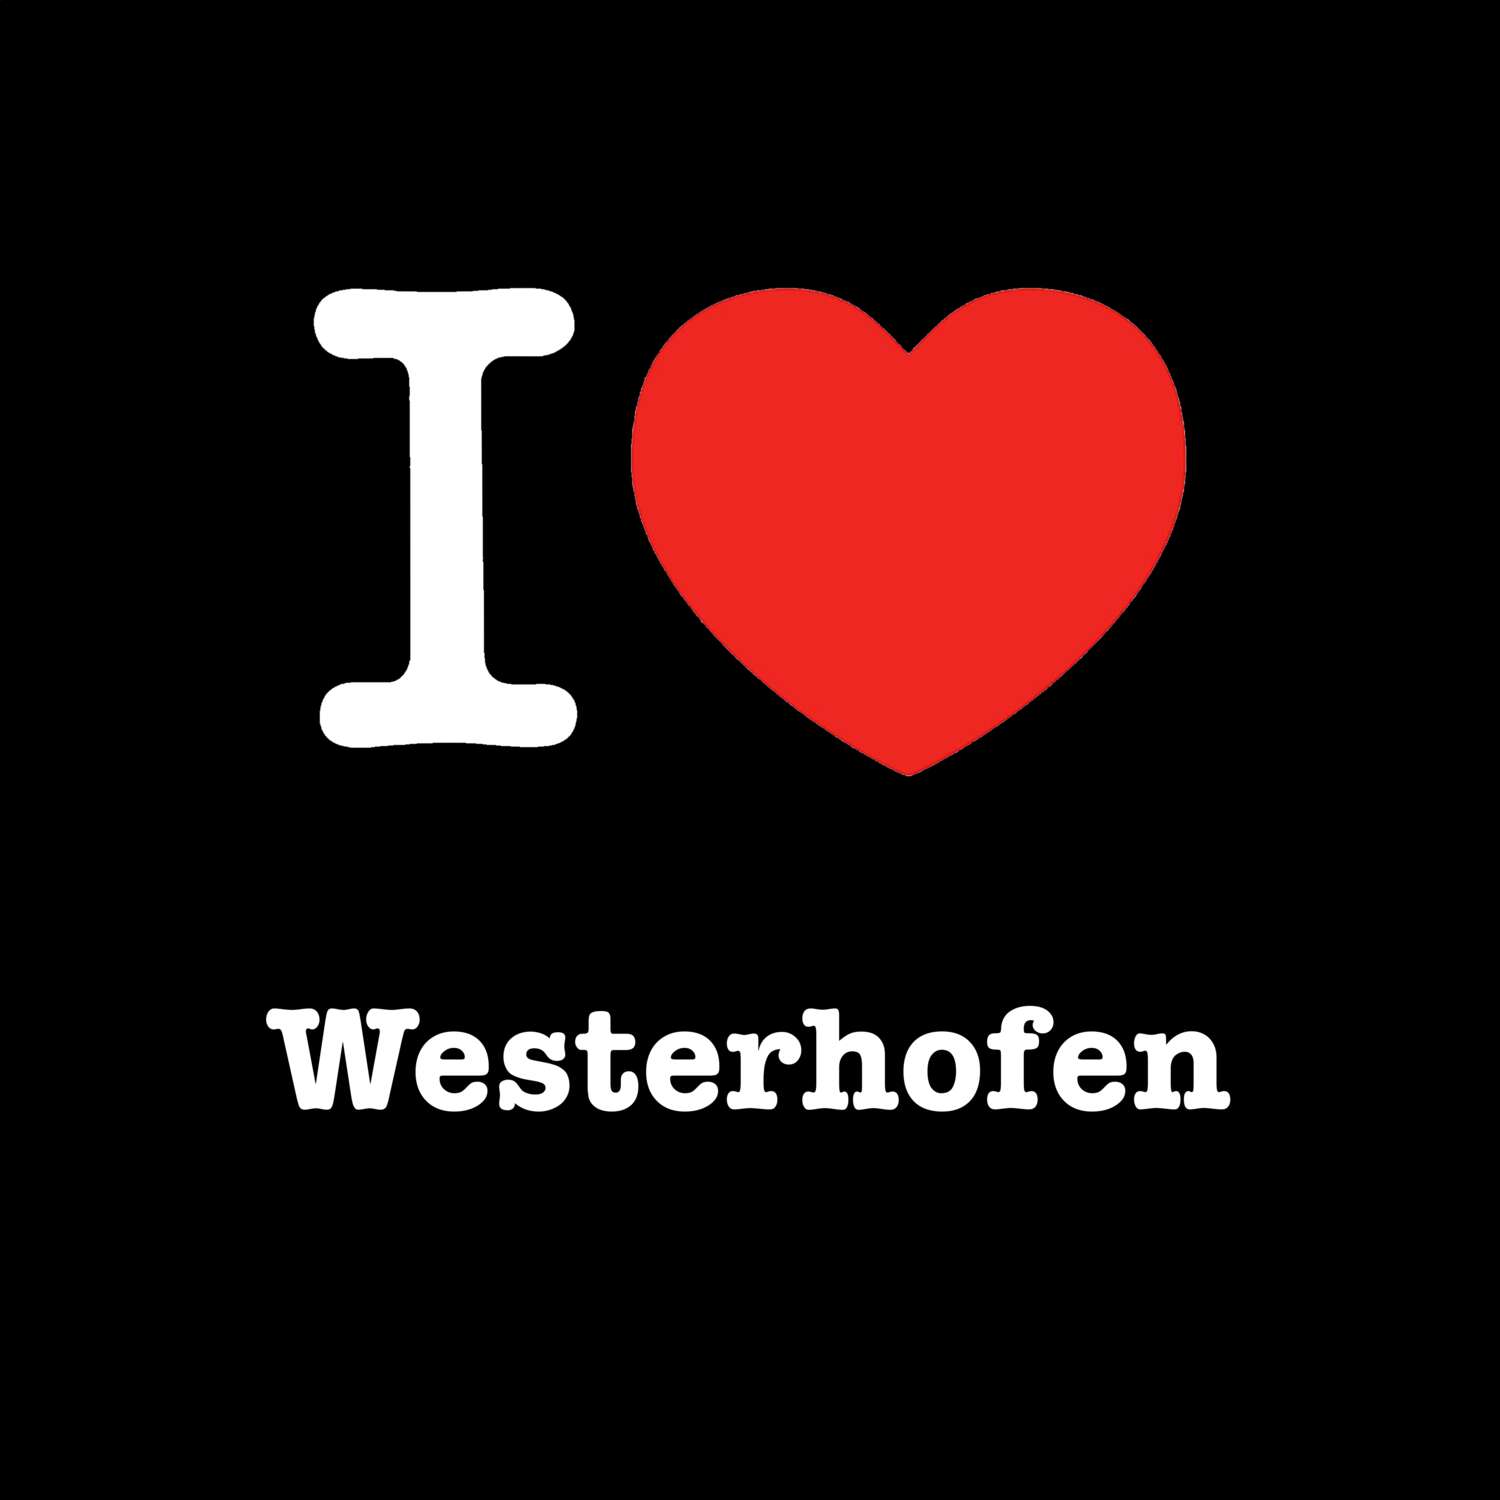 Westerhofen T-Shirt »I love«